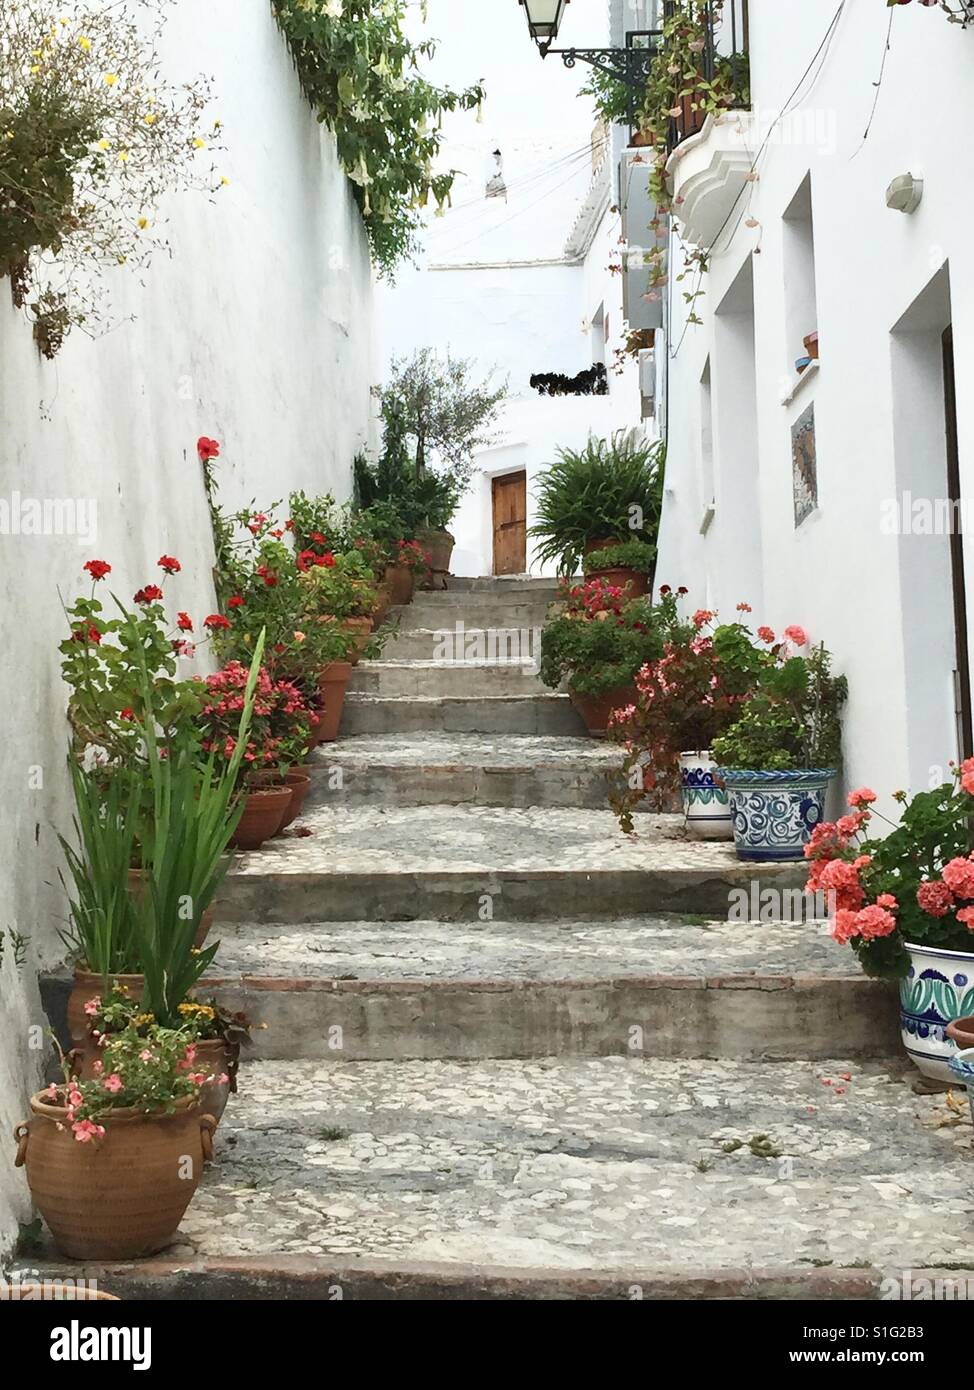 Un ripido passaggio in una collina in Frigliana, Nerja, Spagna. Piuttosto vasi di fiori la linea di entrambi i lati dei gradini e una porta marrone è sulla distanza. Foto Stock